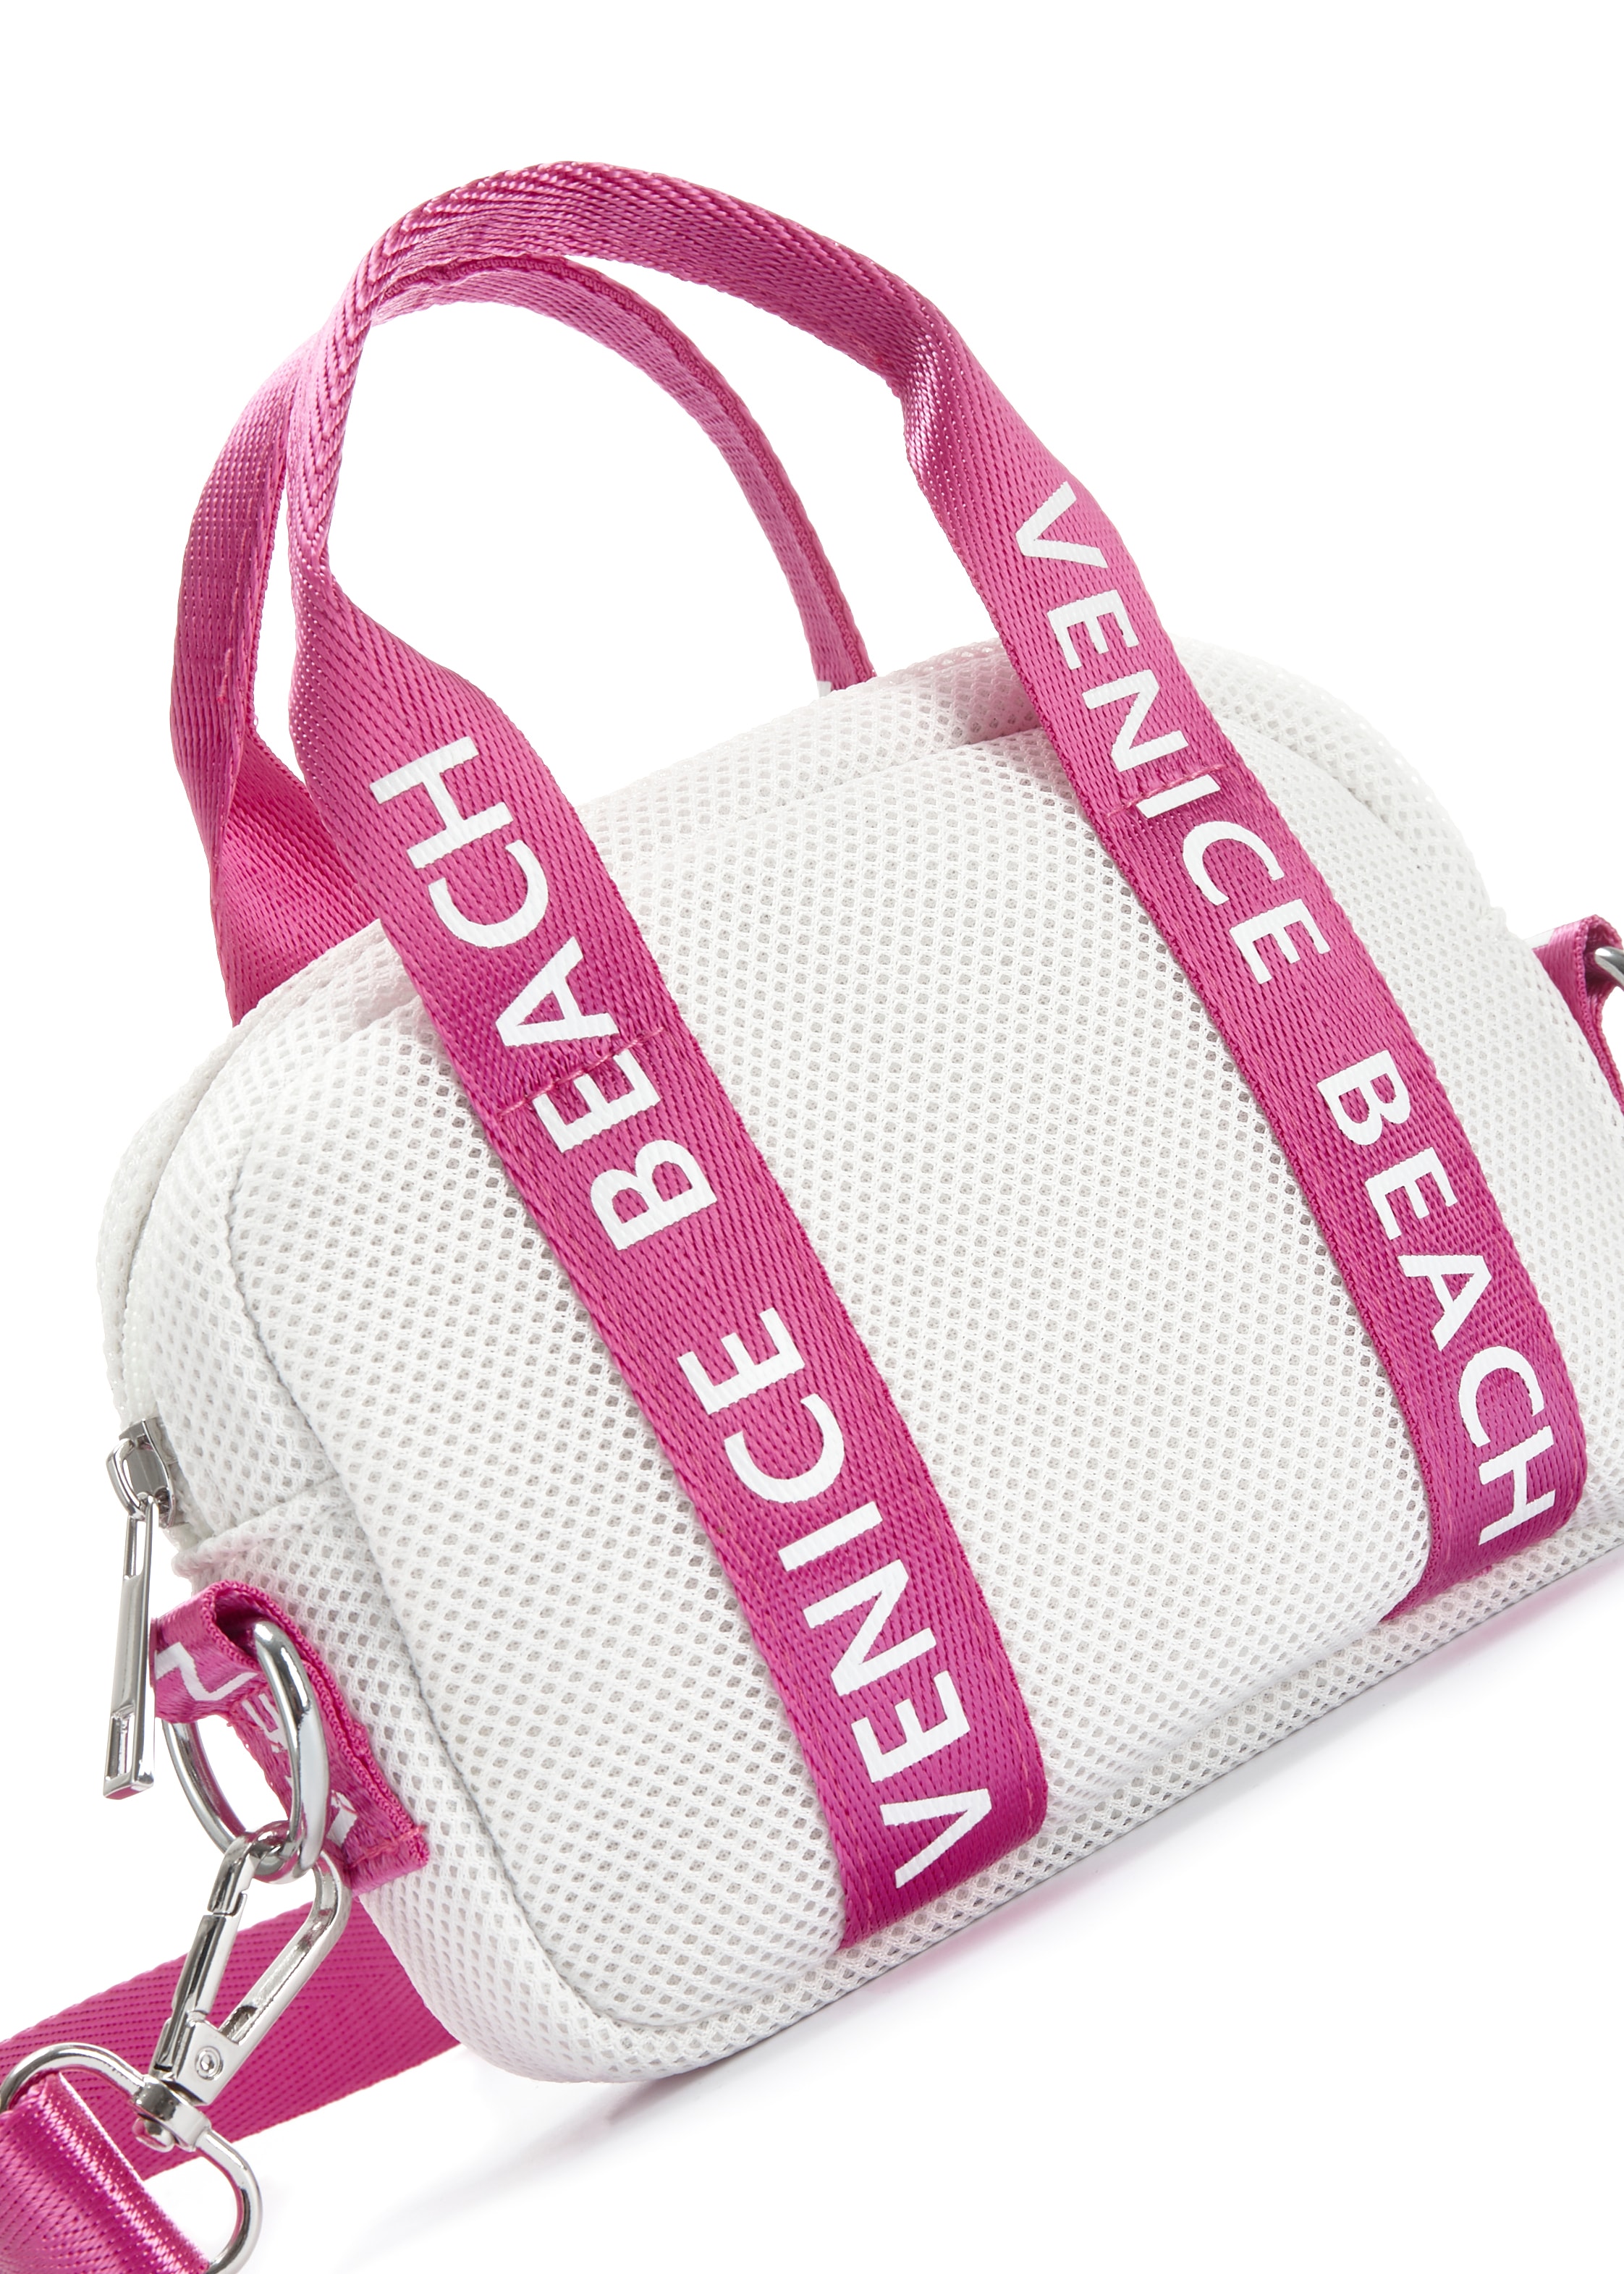 Venice Beach Umhängetasche, Minibag, Handtasche aus Mesh Material VEGAN